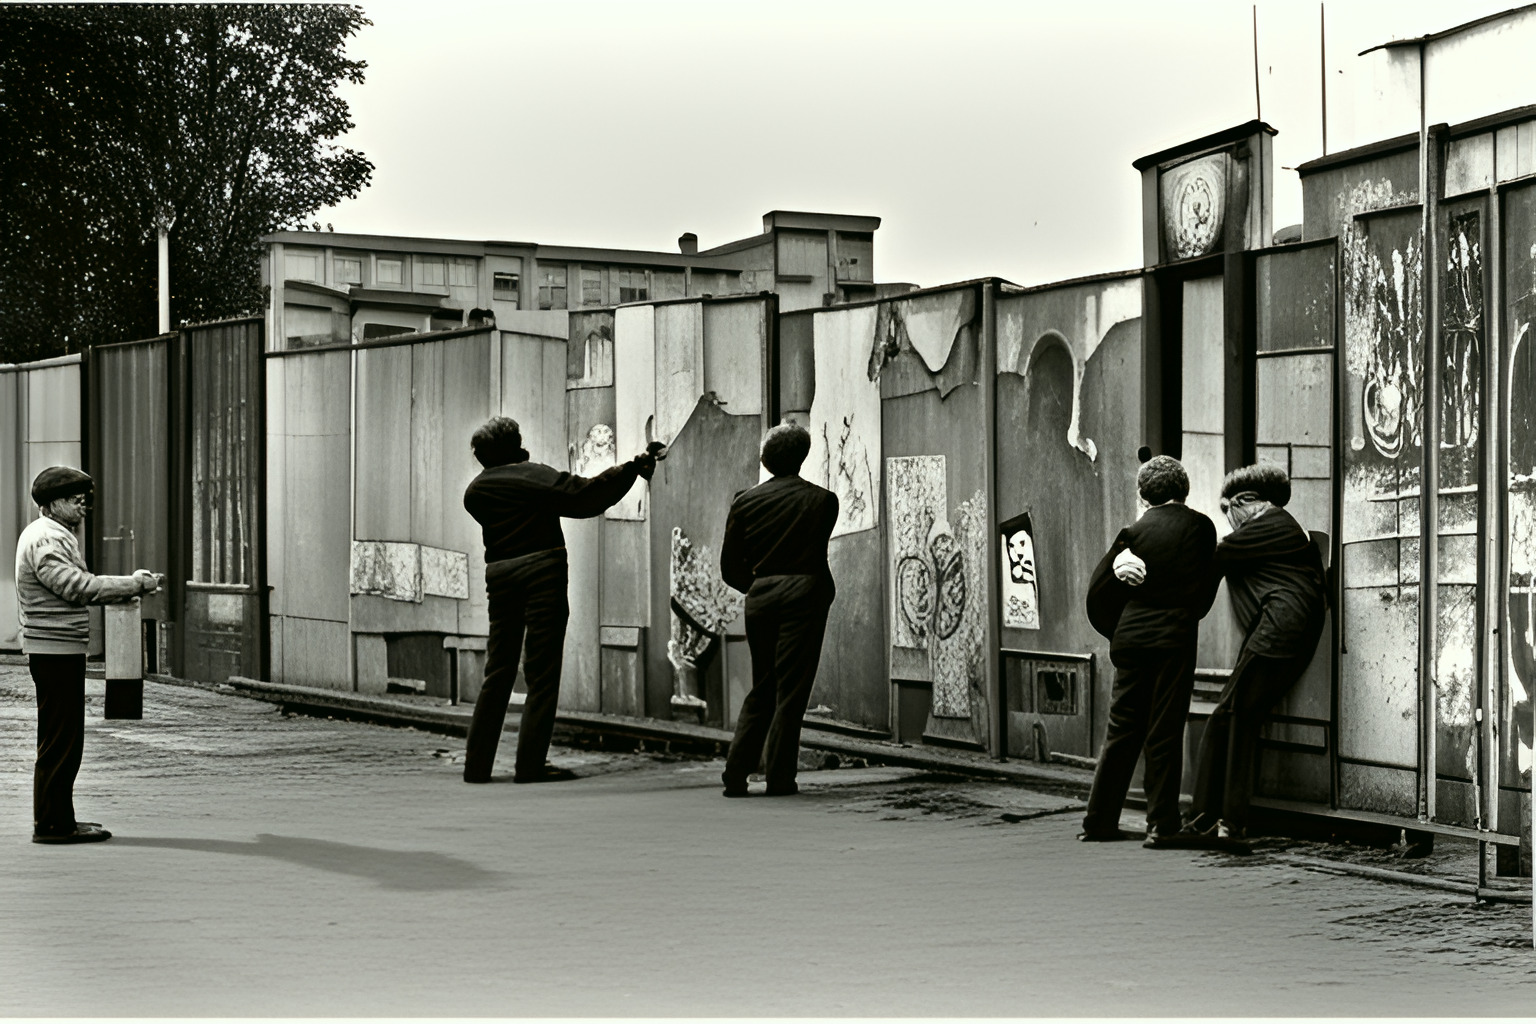 The Berlin Wall in 1982